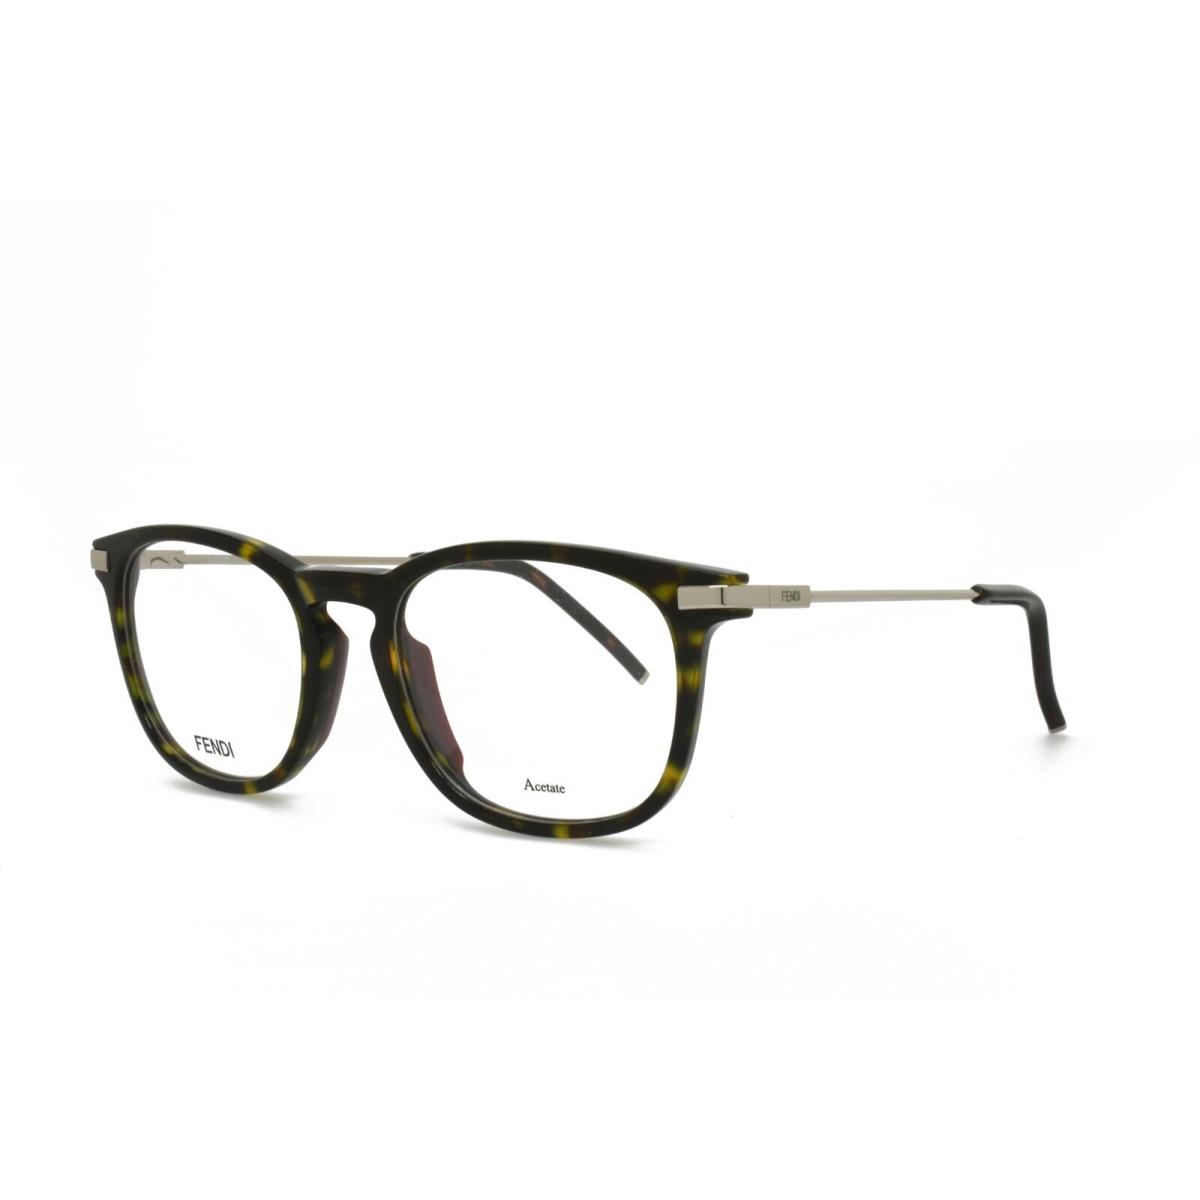 Fendi 0226 086 50-19-145 Tortoise Eyeglasses Frames